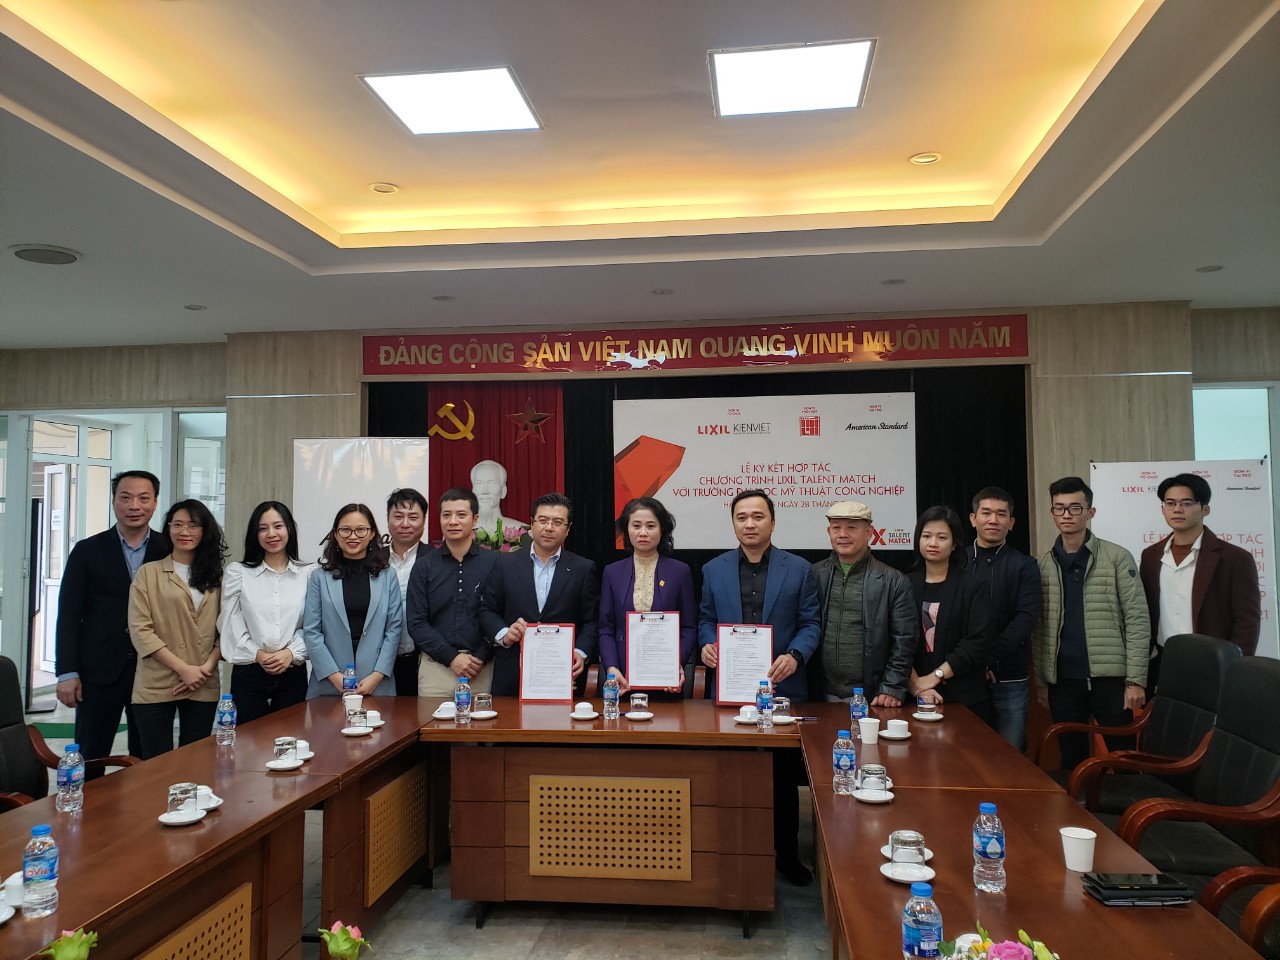 Ông Nguyễn Trường Chinh và Ông Vương Đạo Hoàng đại diện các bên ký kết Thỏa thuận hợp tác Chương trình LIXIL Talent Match